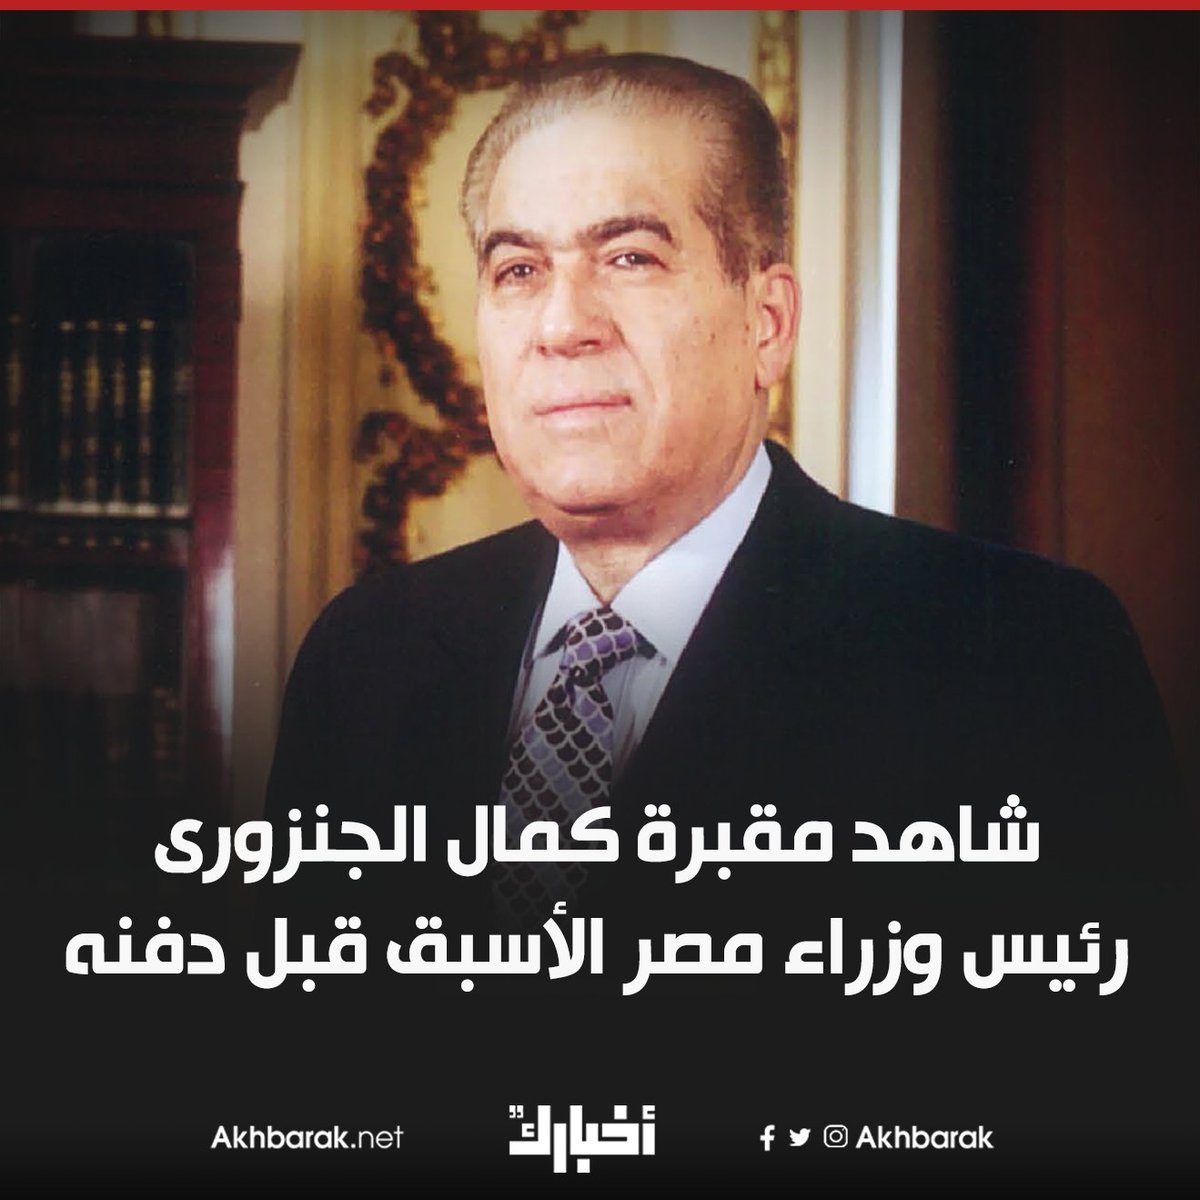 يجاوره الرئيس الأسبق محمد حسنى مبارك المصدر اليوم السابع